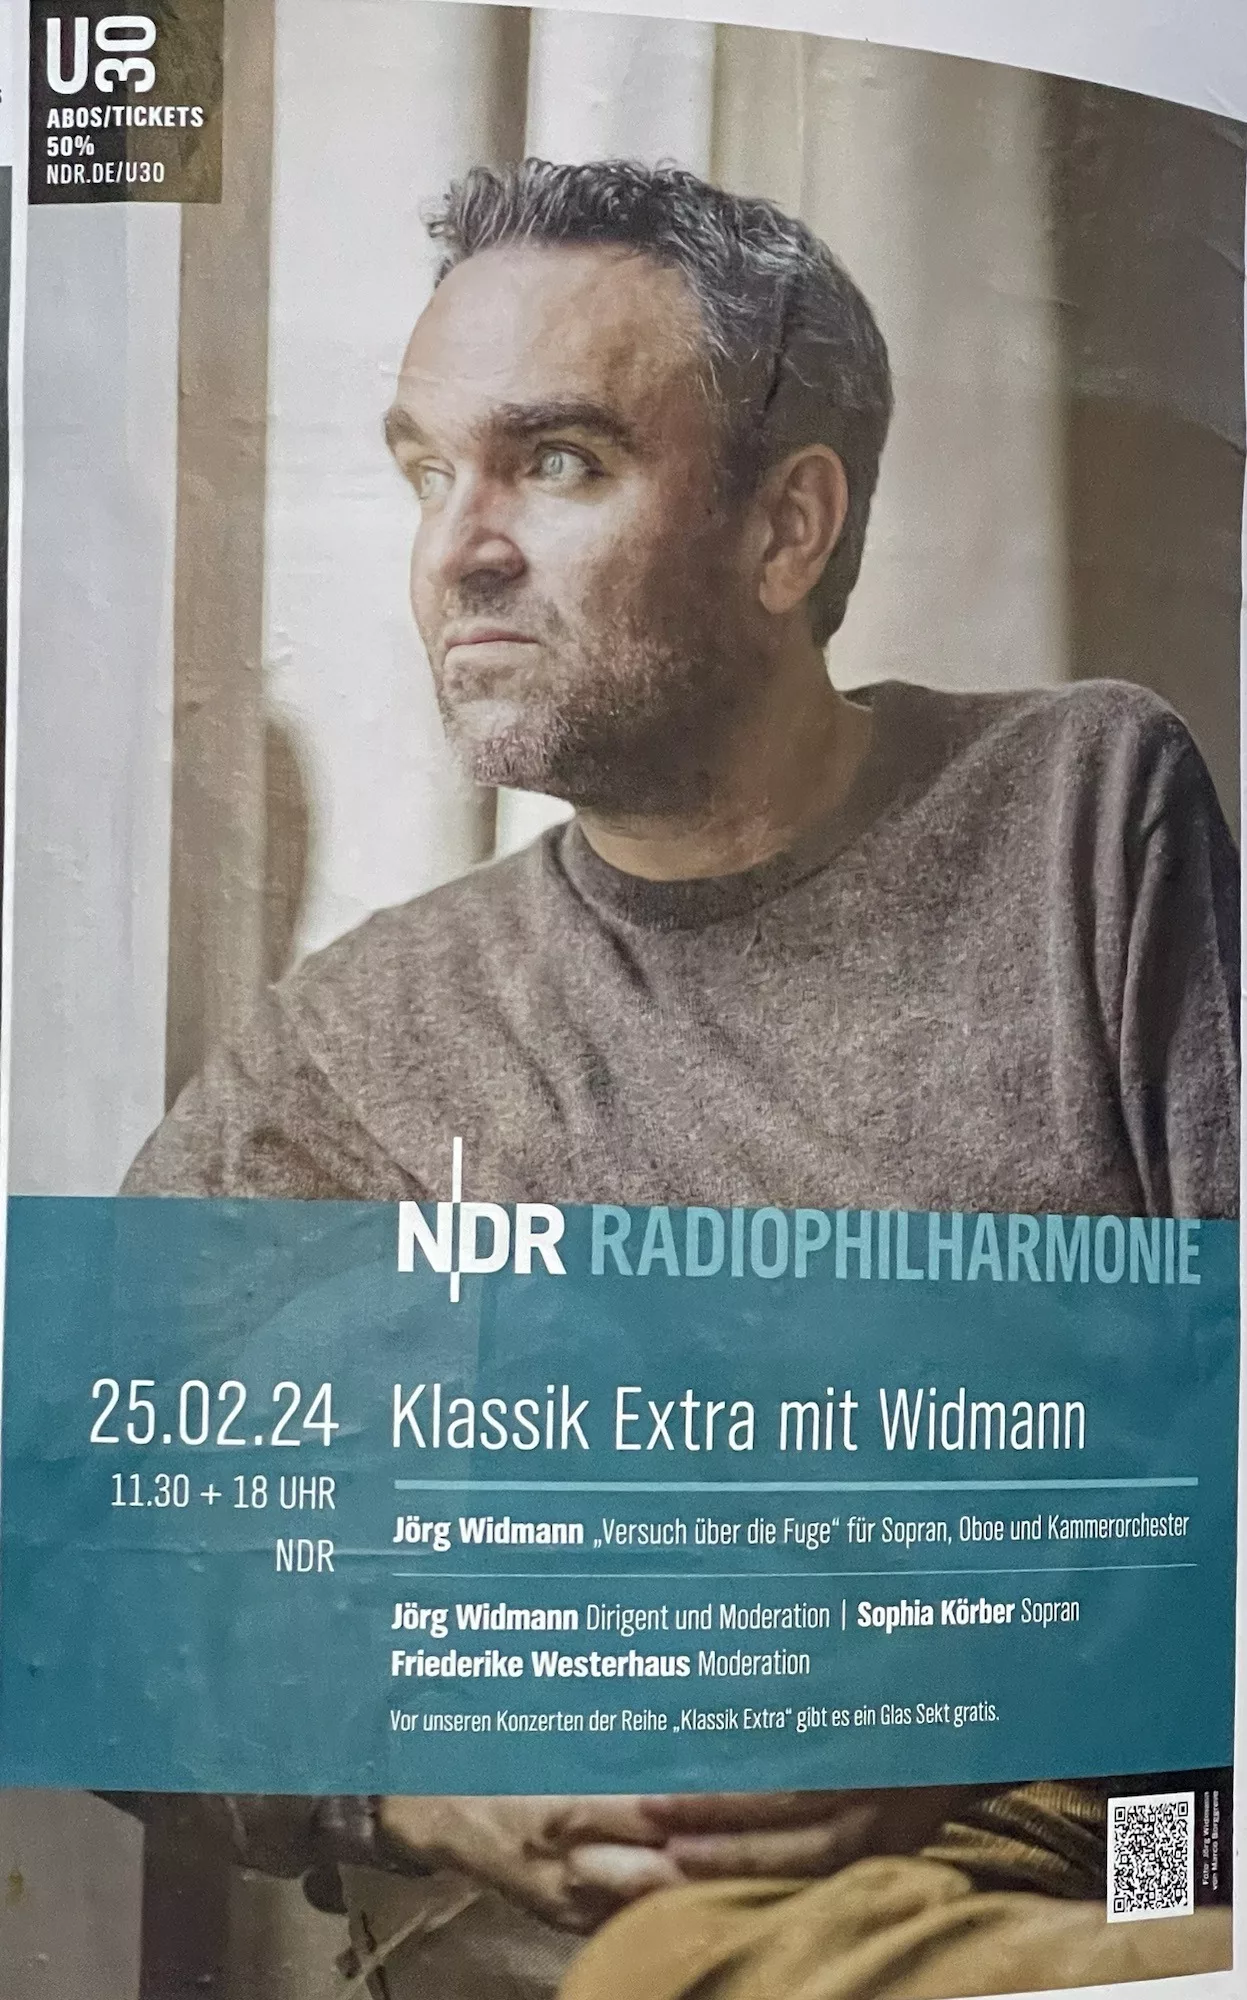 NDR Radiophilharmonie: Konzert mit einem Klassik Extra mit Widmann